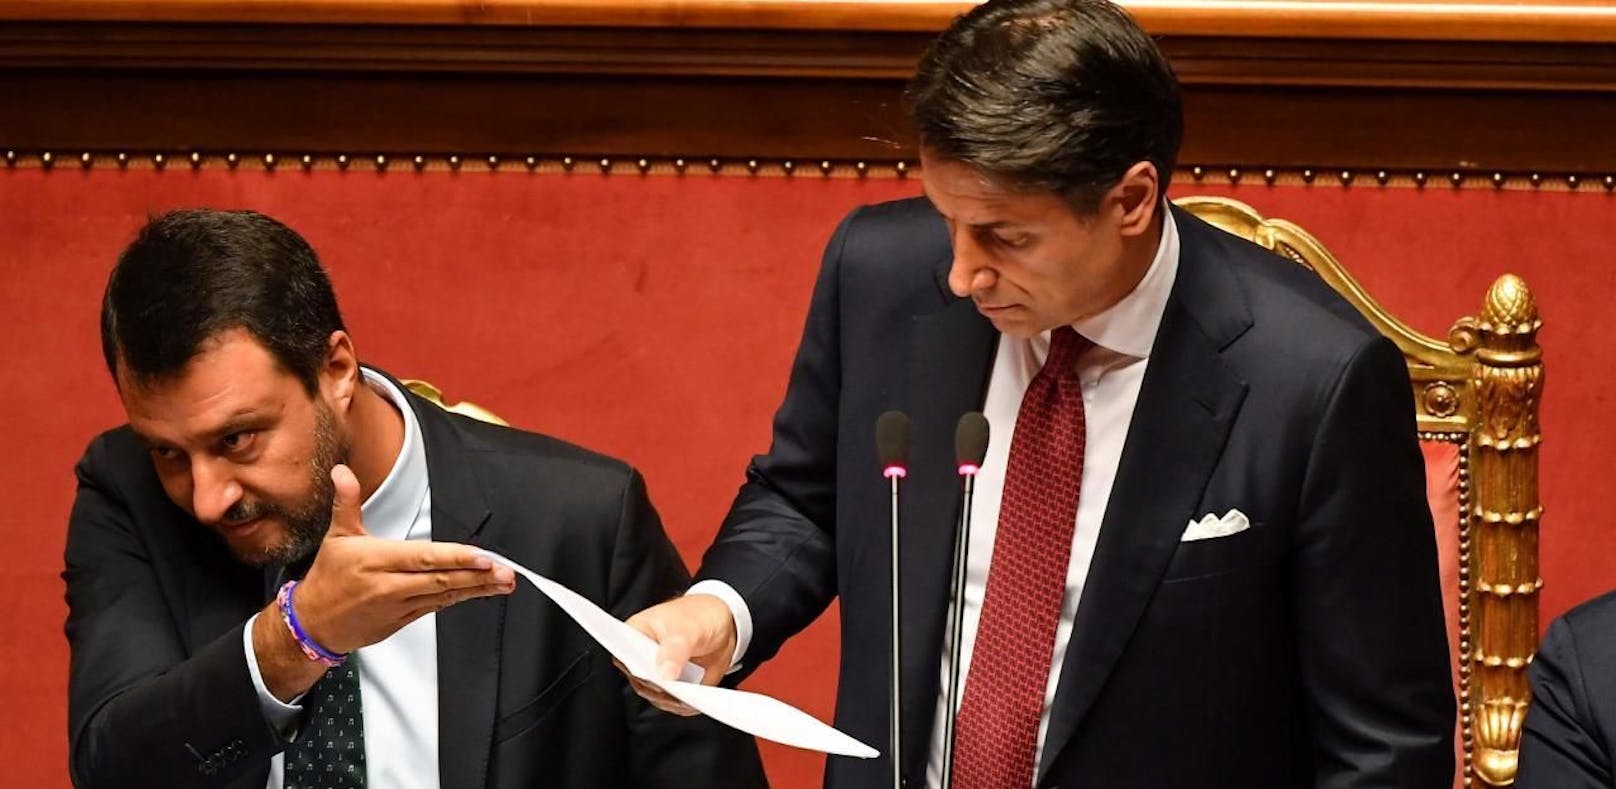 Premier Conte tritt zurück – Krise in Italien